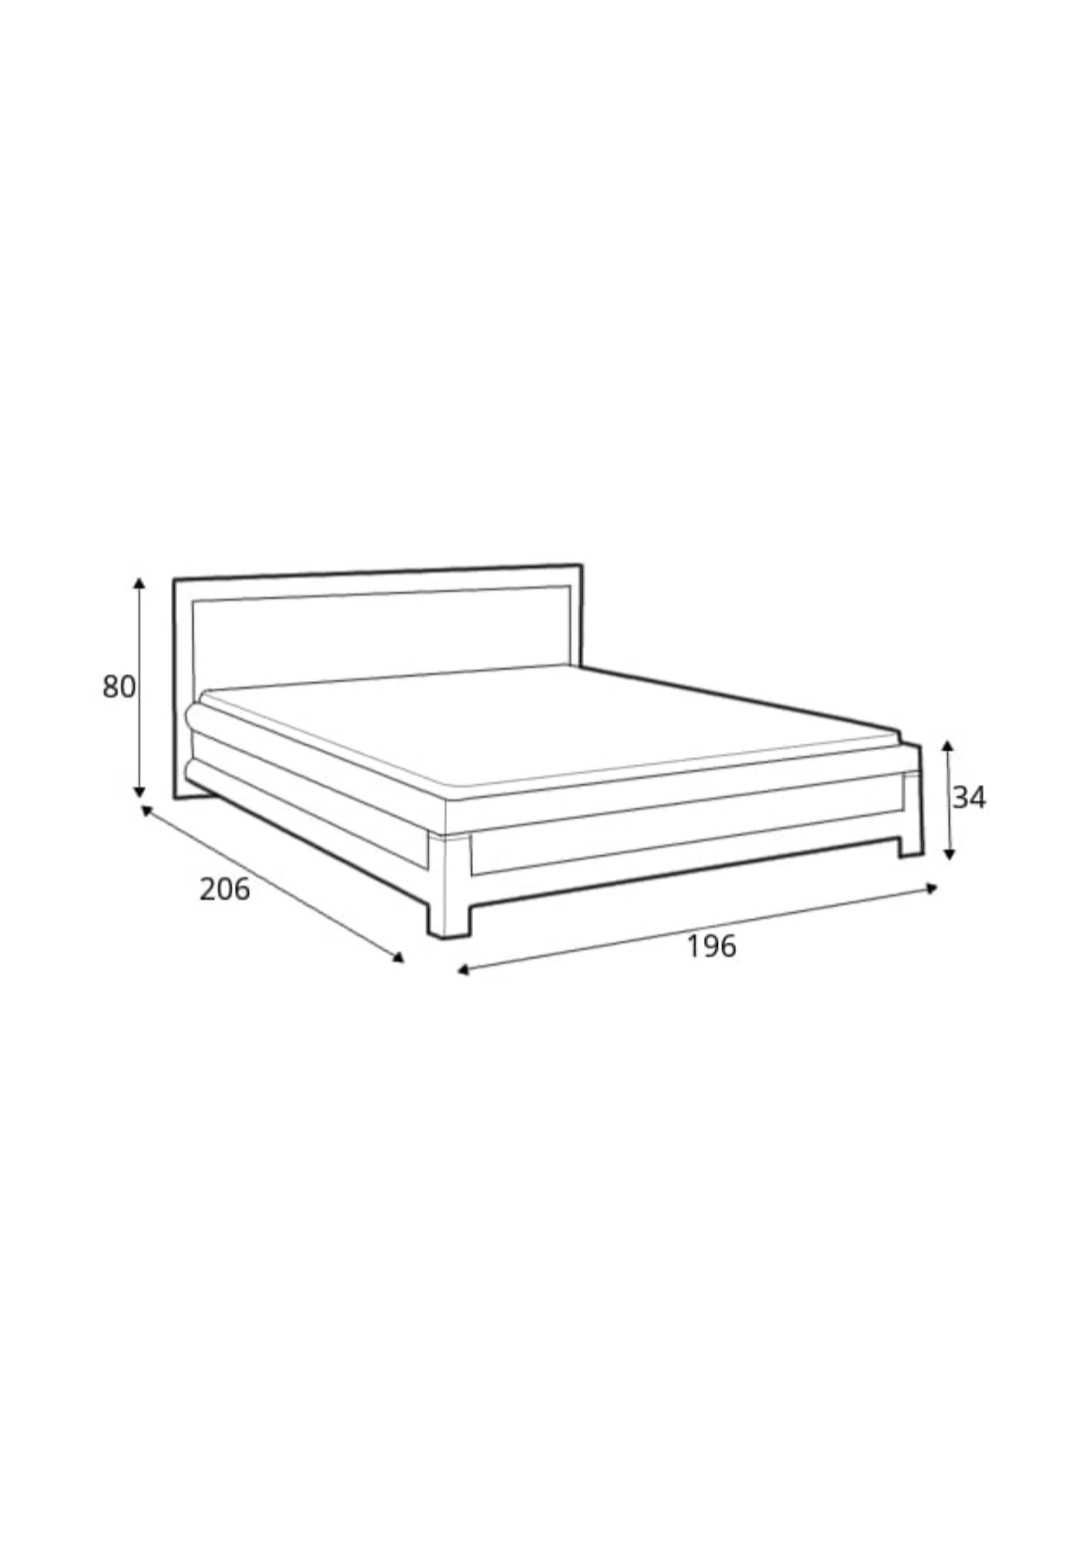 Duże 2 osobowe łóżko 180x200 wraz z materacem